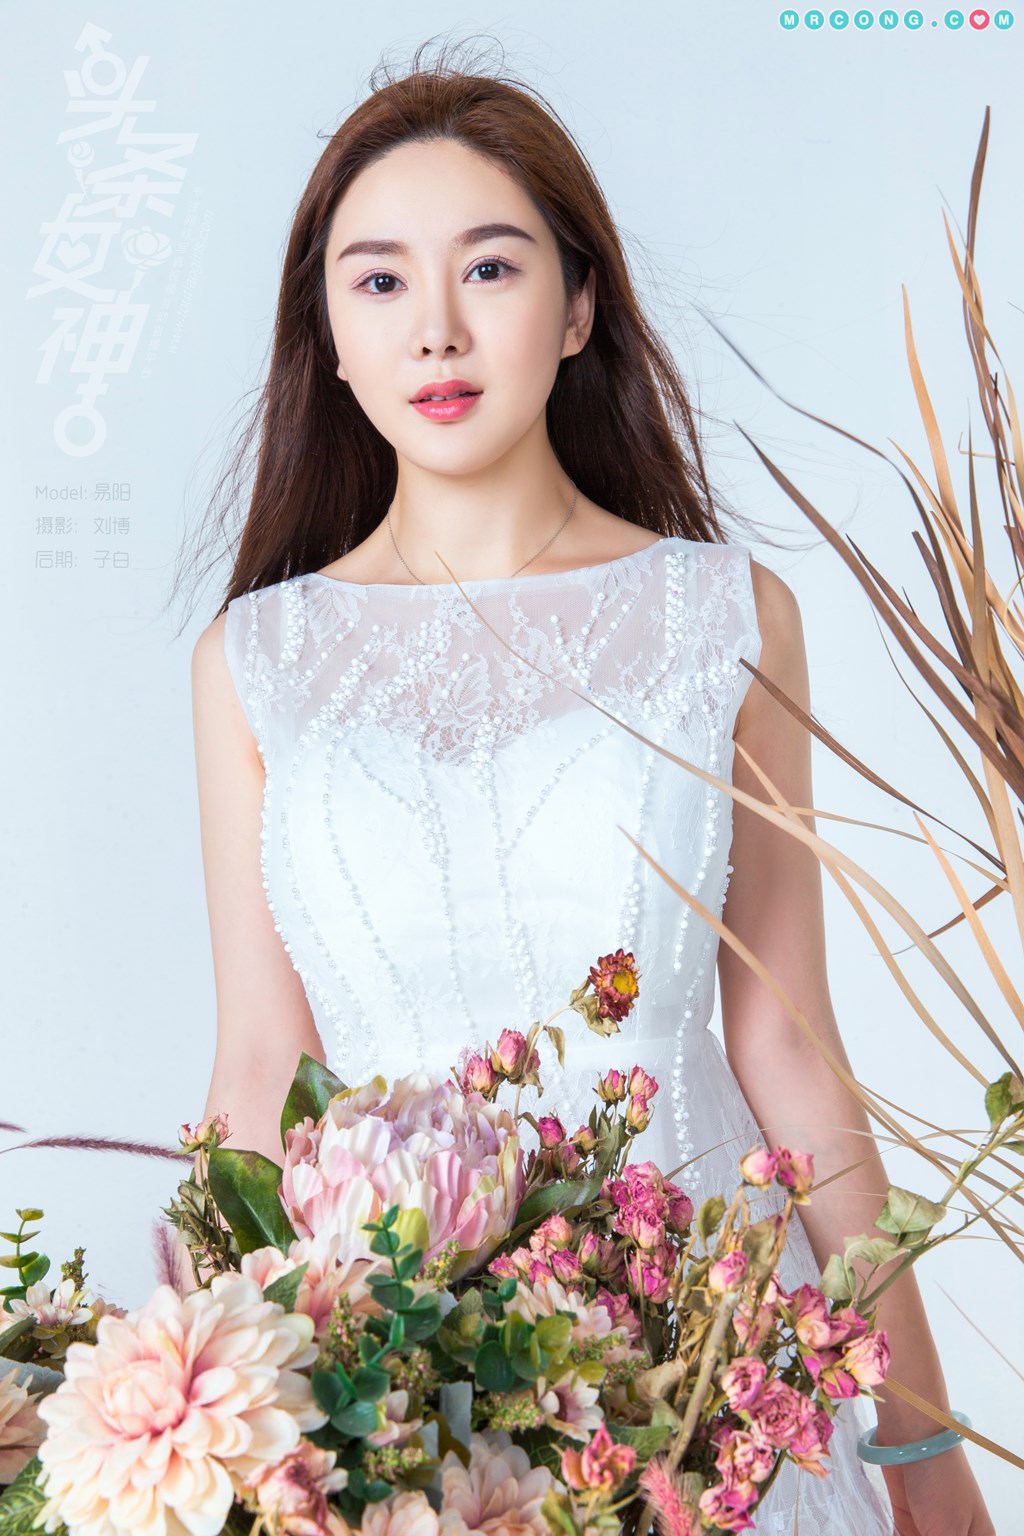 TouTiao 2018-07-27: Model Yi Yang (易 阳) (11 photos) photo 1-1